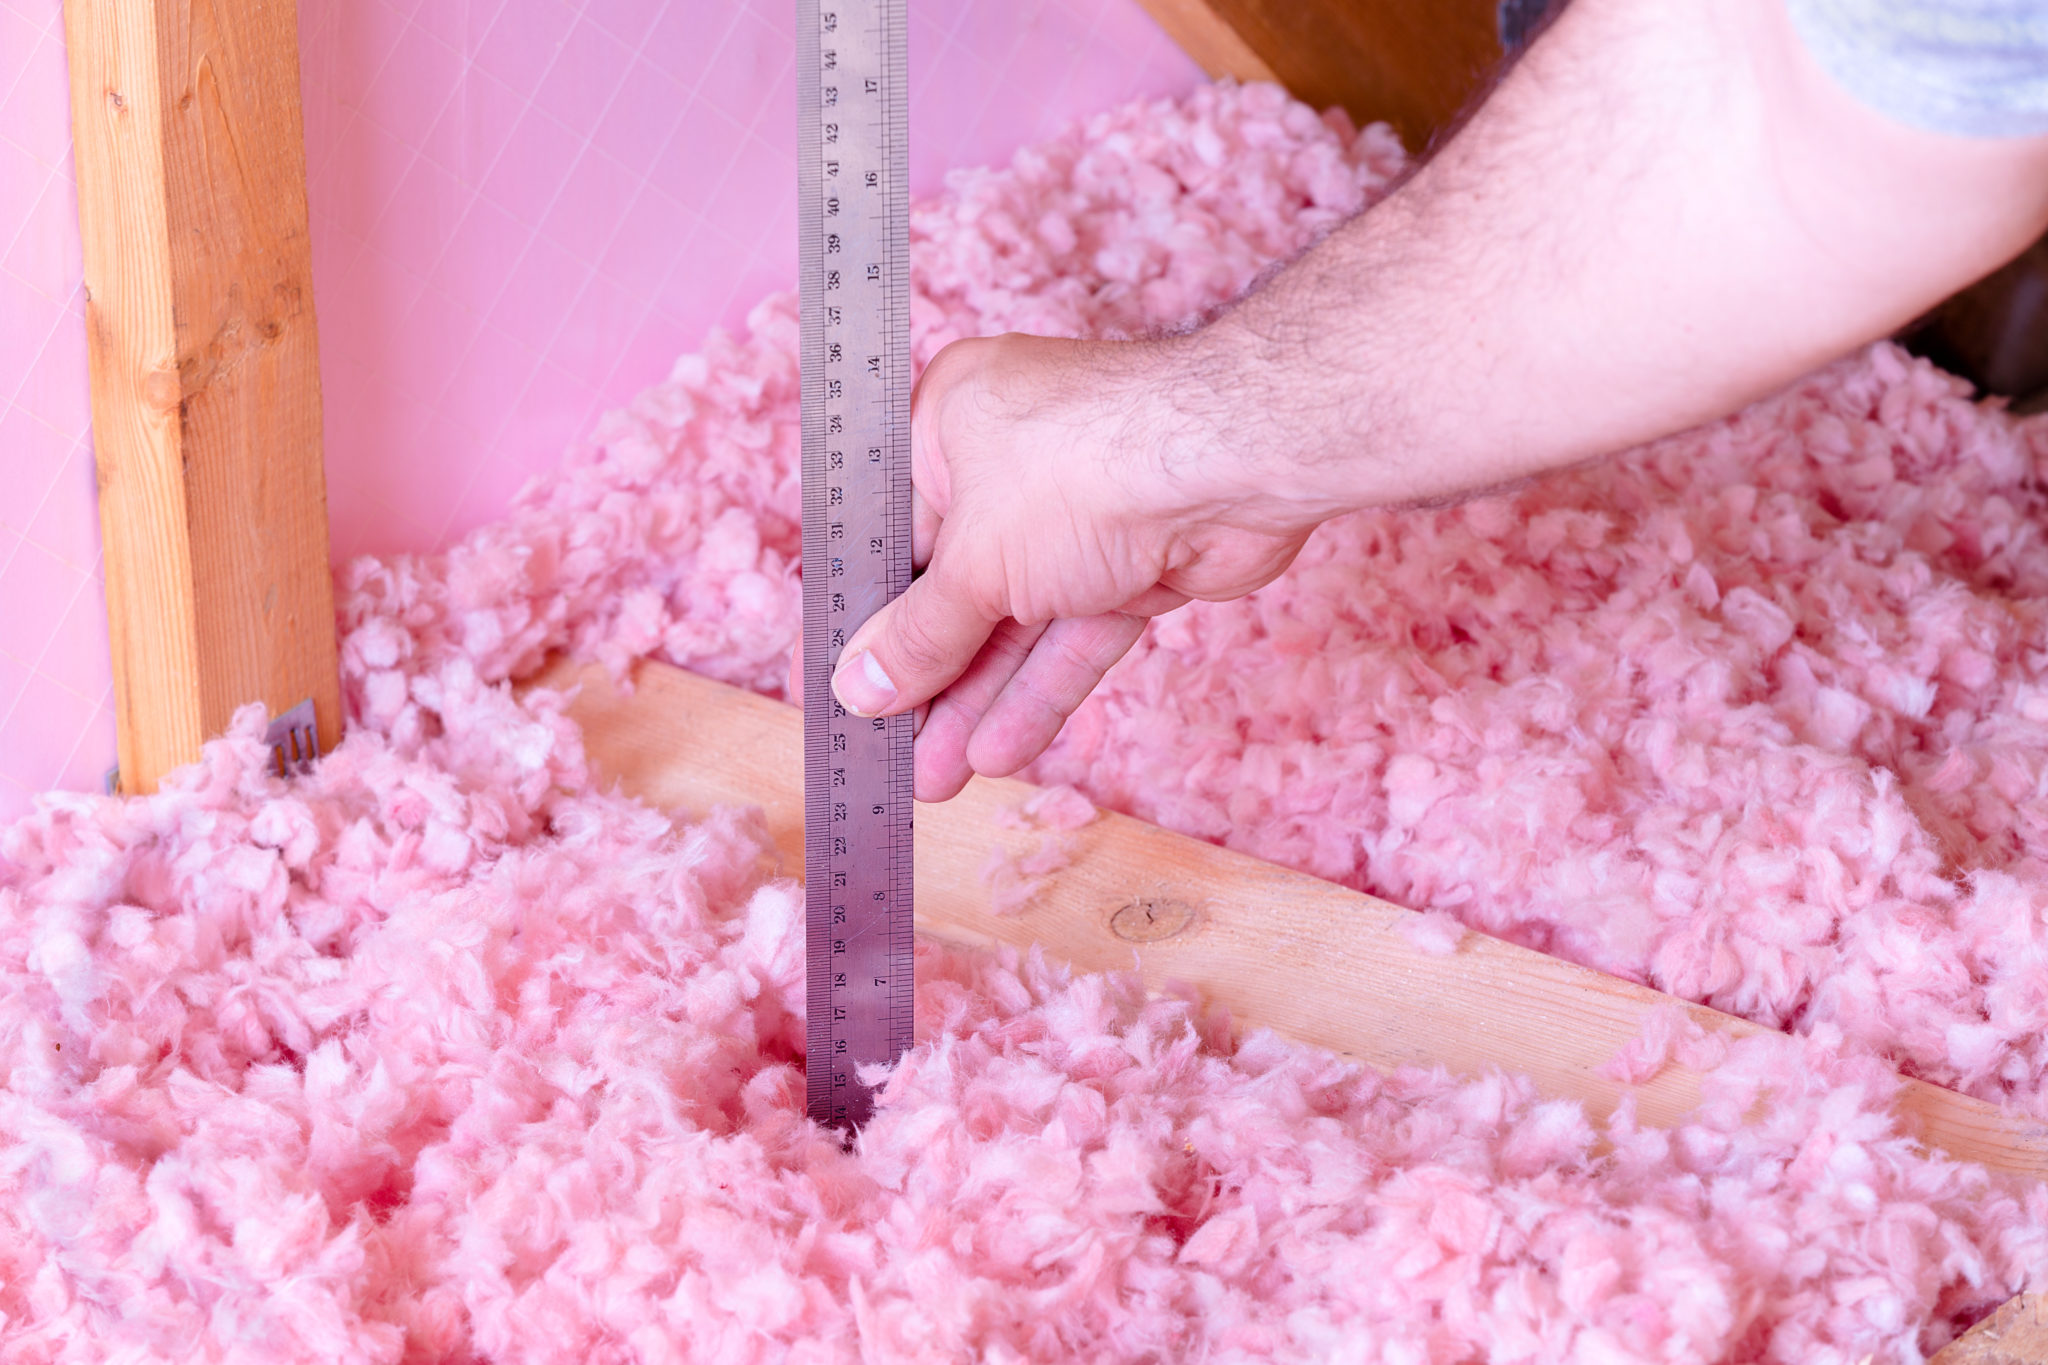 Measuring attic insulation